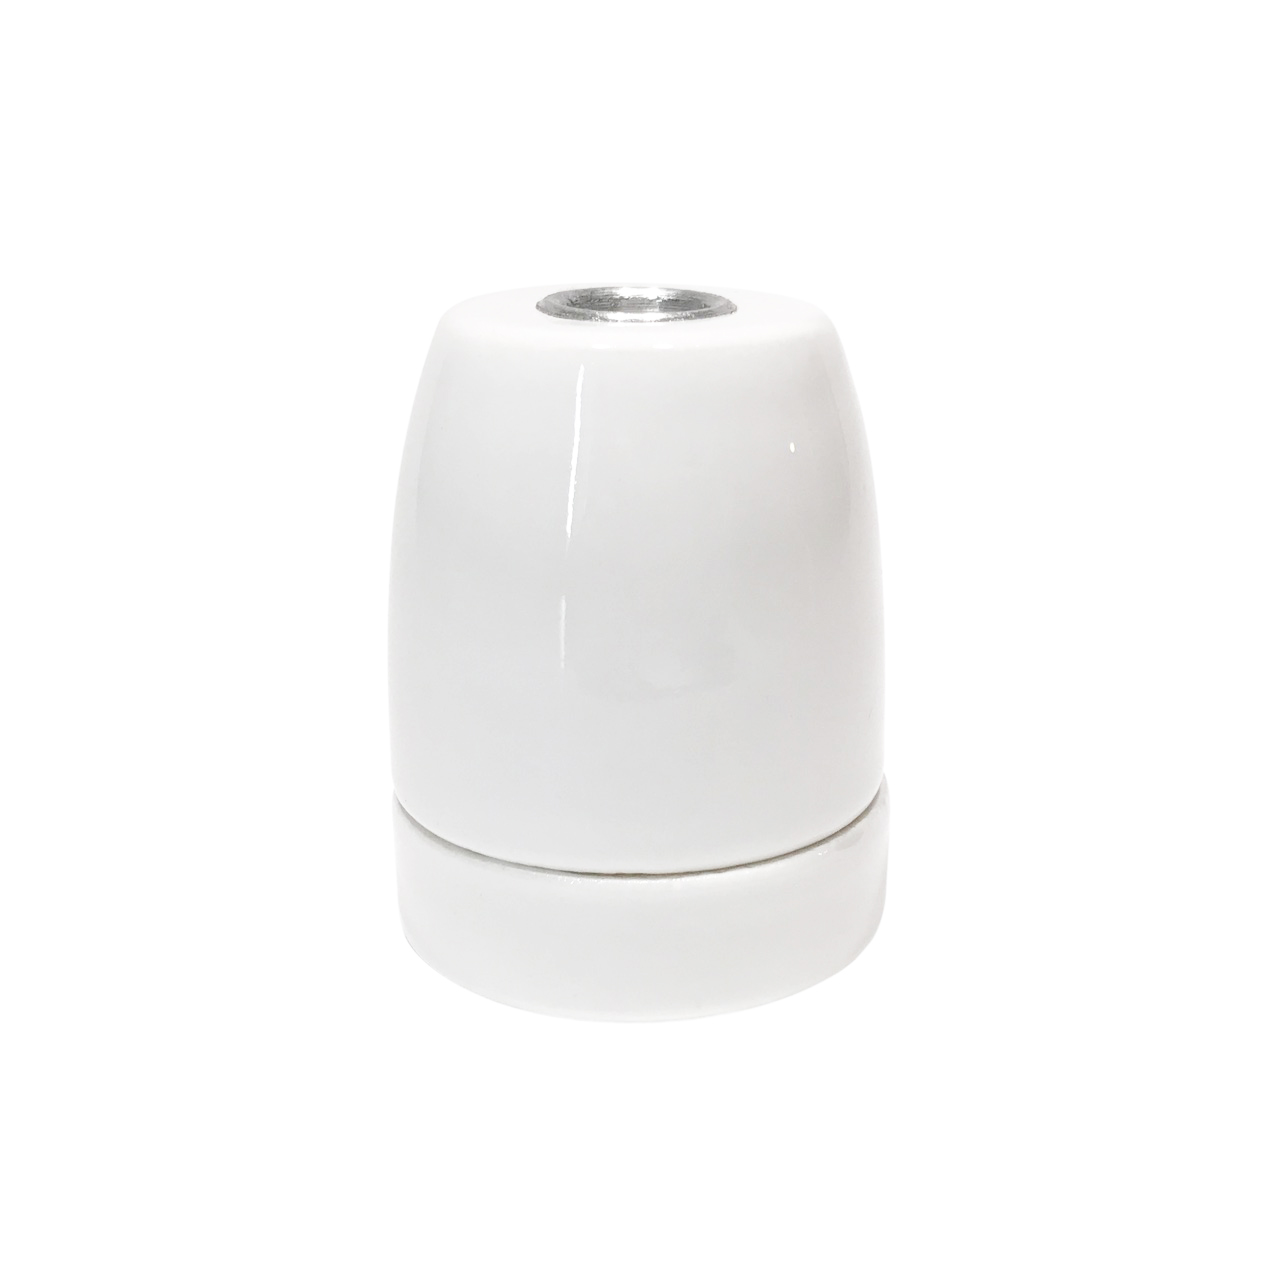 Eleve su espacio con la luminaria decorativa E27 de porcelana blanca  Portalámparas decorativo, blanco, Bailey